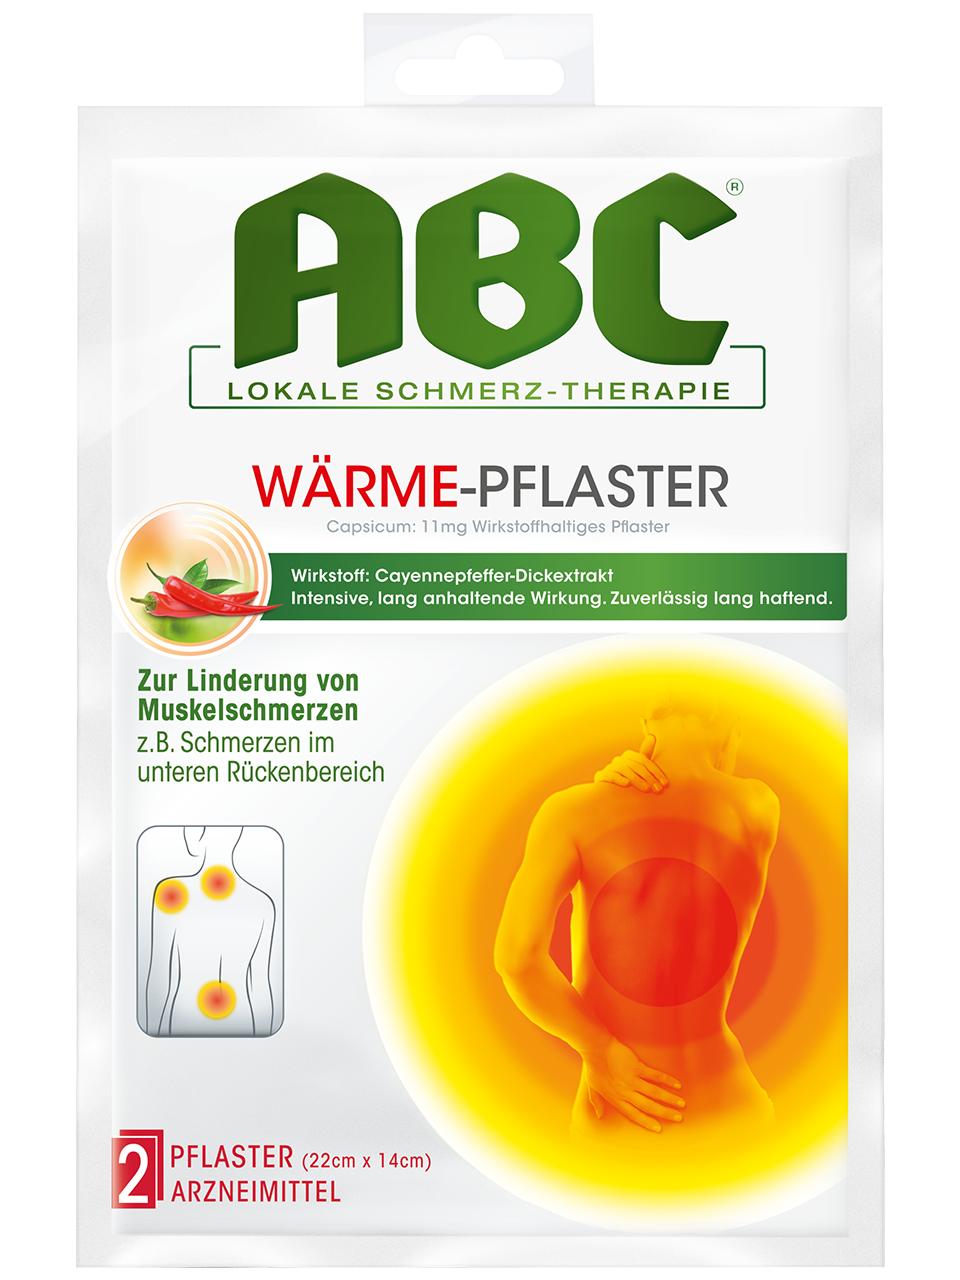 ABC Lokale Schmerz-Therapie Wärme-Pflaster Capsicum 11 mg wirkstoffhaltiges Pflaster